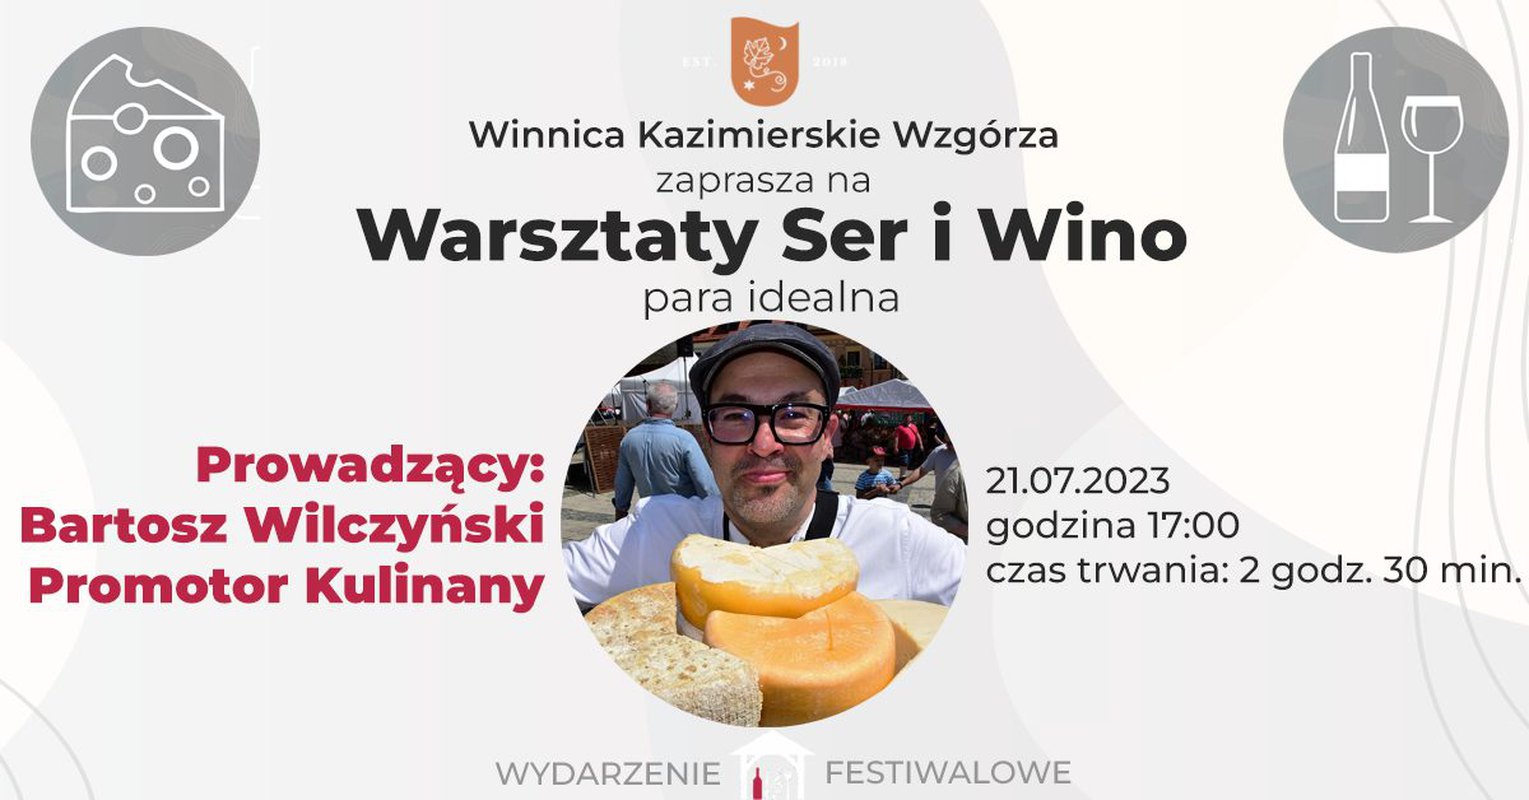 Warsztaty Ser i Wino - idealna para - Bartosz Wilczyński Promotor Kulinarny